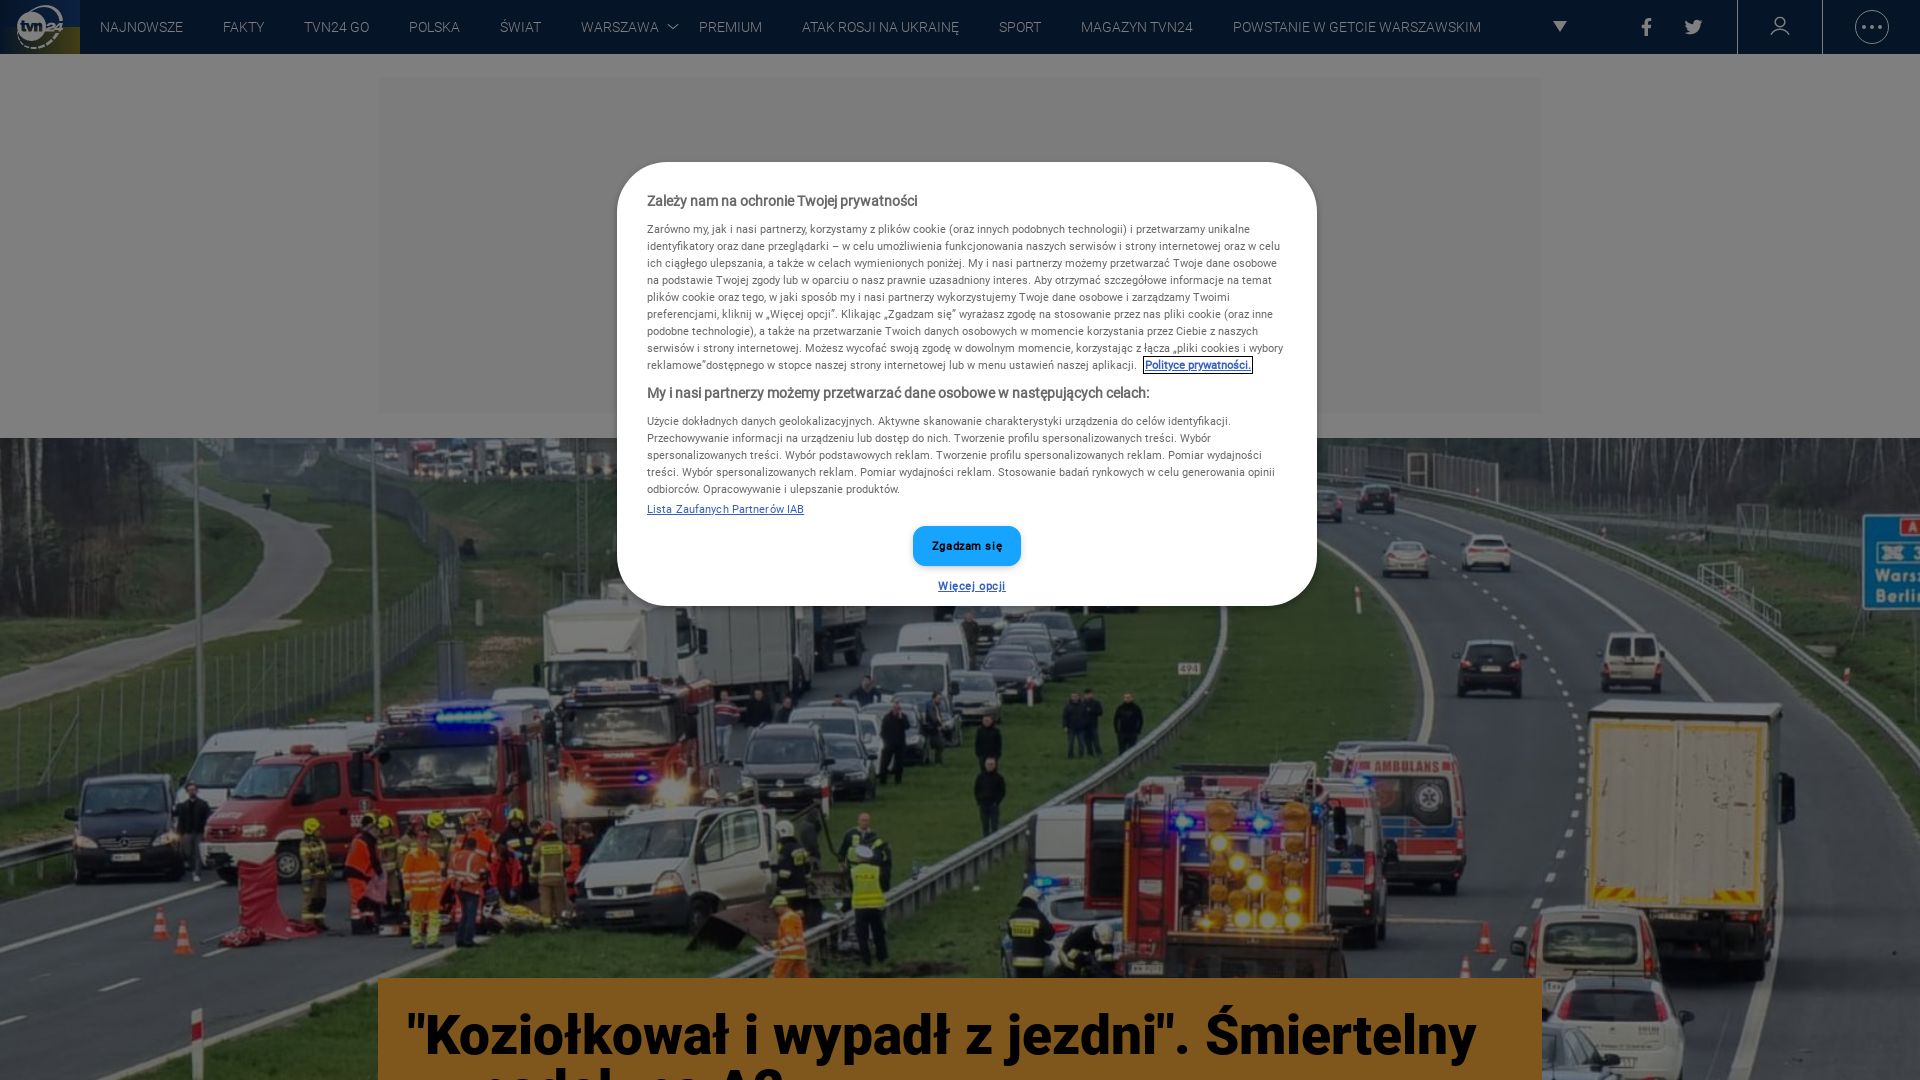 вебсайт tvn24.pl Є   ONLINE